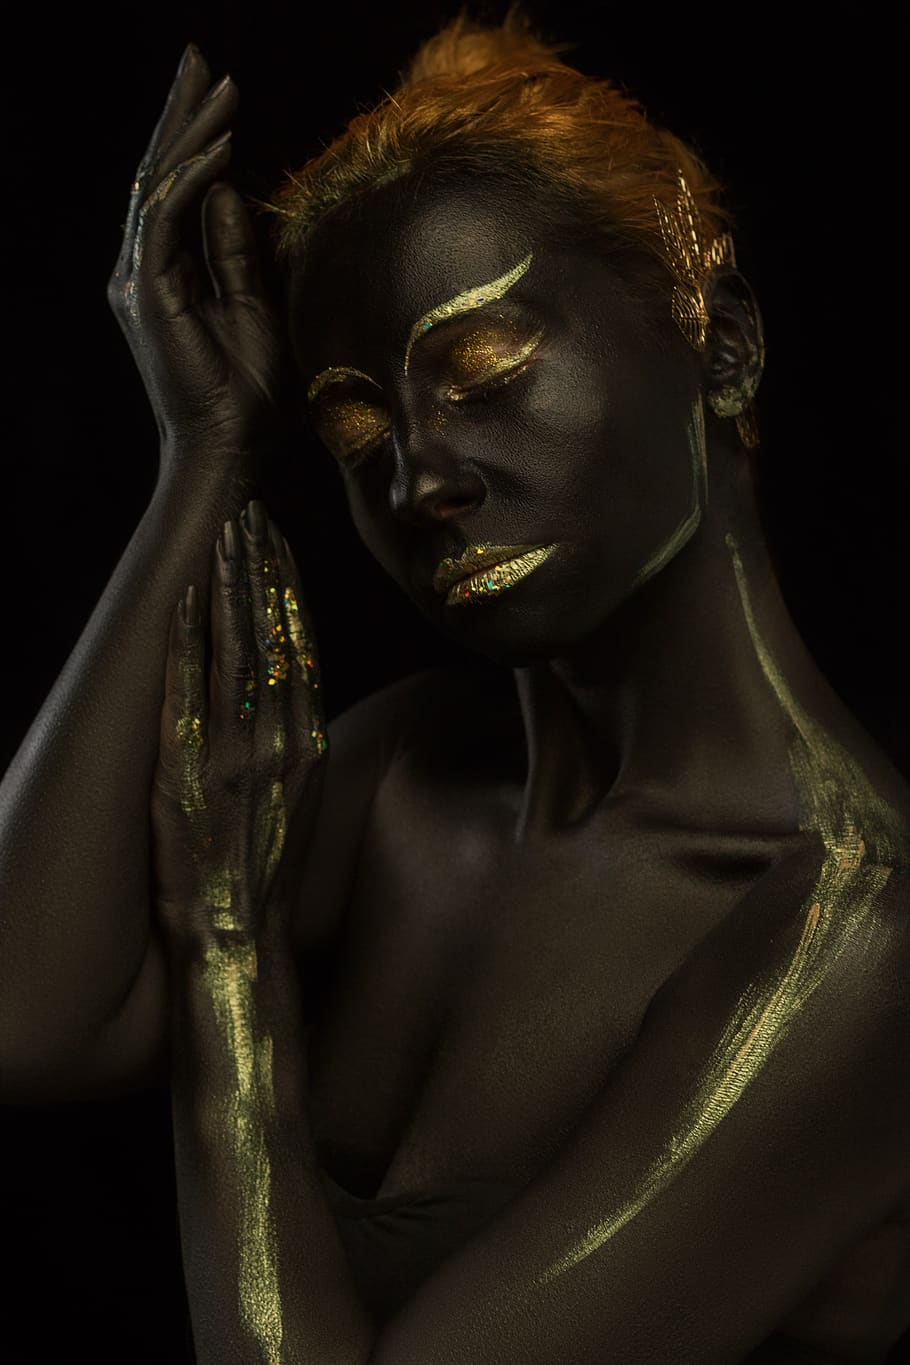 maquiagem, pintura corporal, retrato, menina, modelo, ouro, maquiagem aqua, pele escura, estilo africano, arte corporal